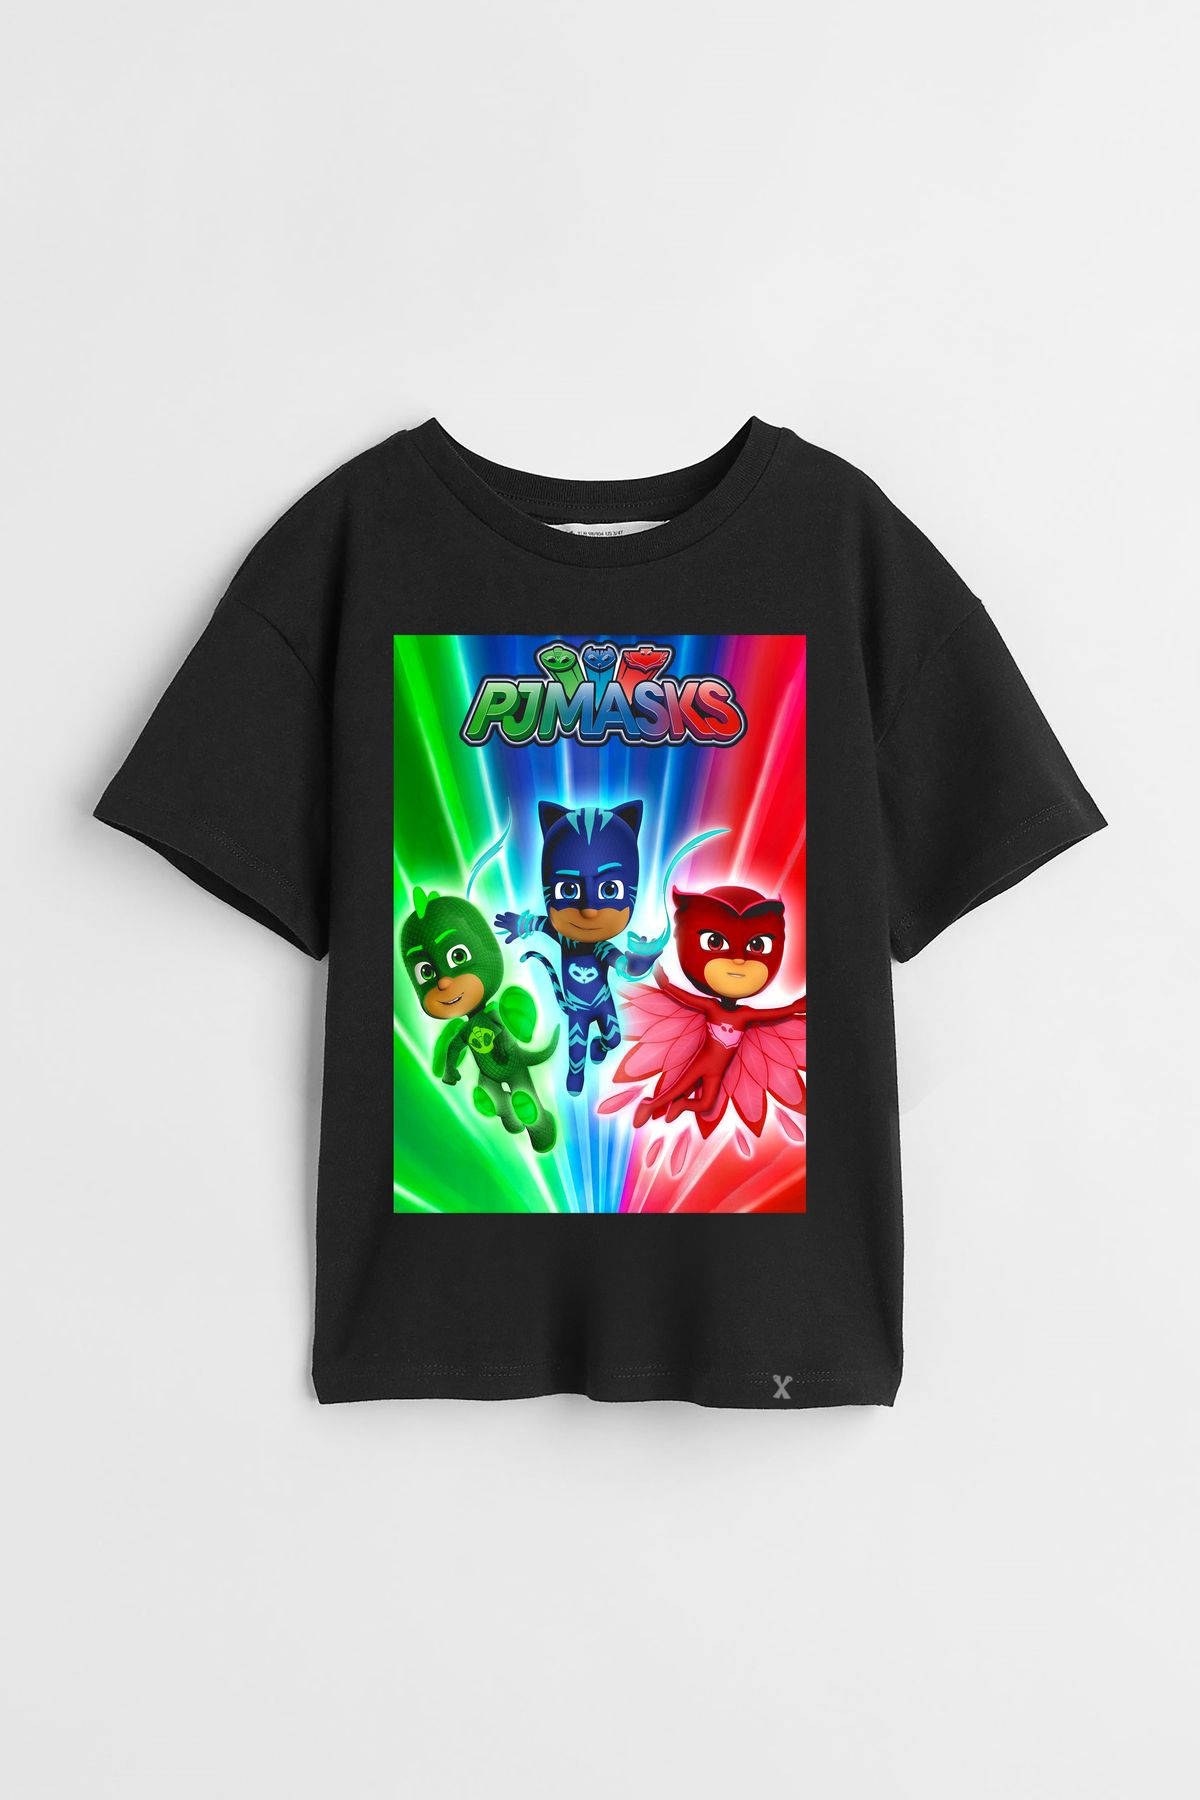 Darkia Pijamasks Pijamaskeliler Çizgi Film Tasarım Baskılı Unisex Çocuk Tişört